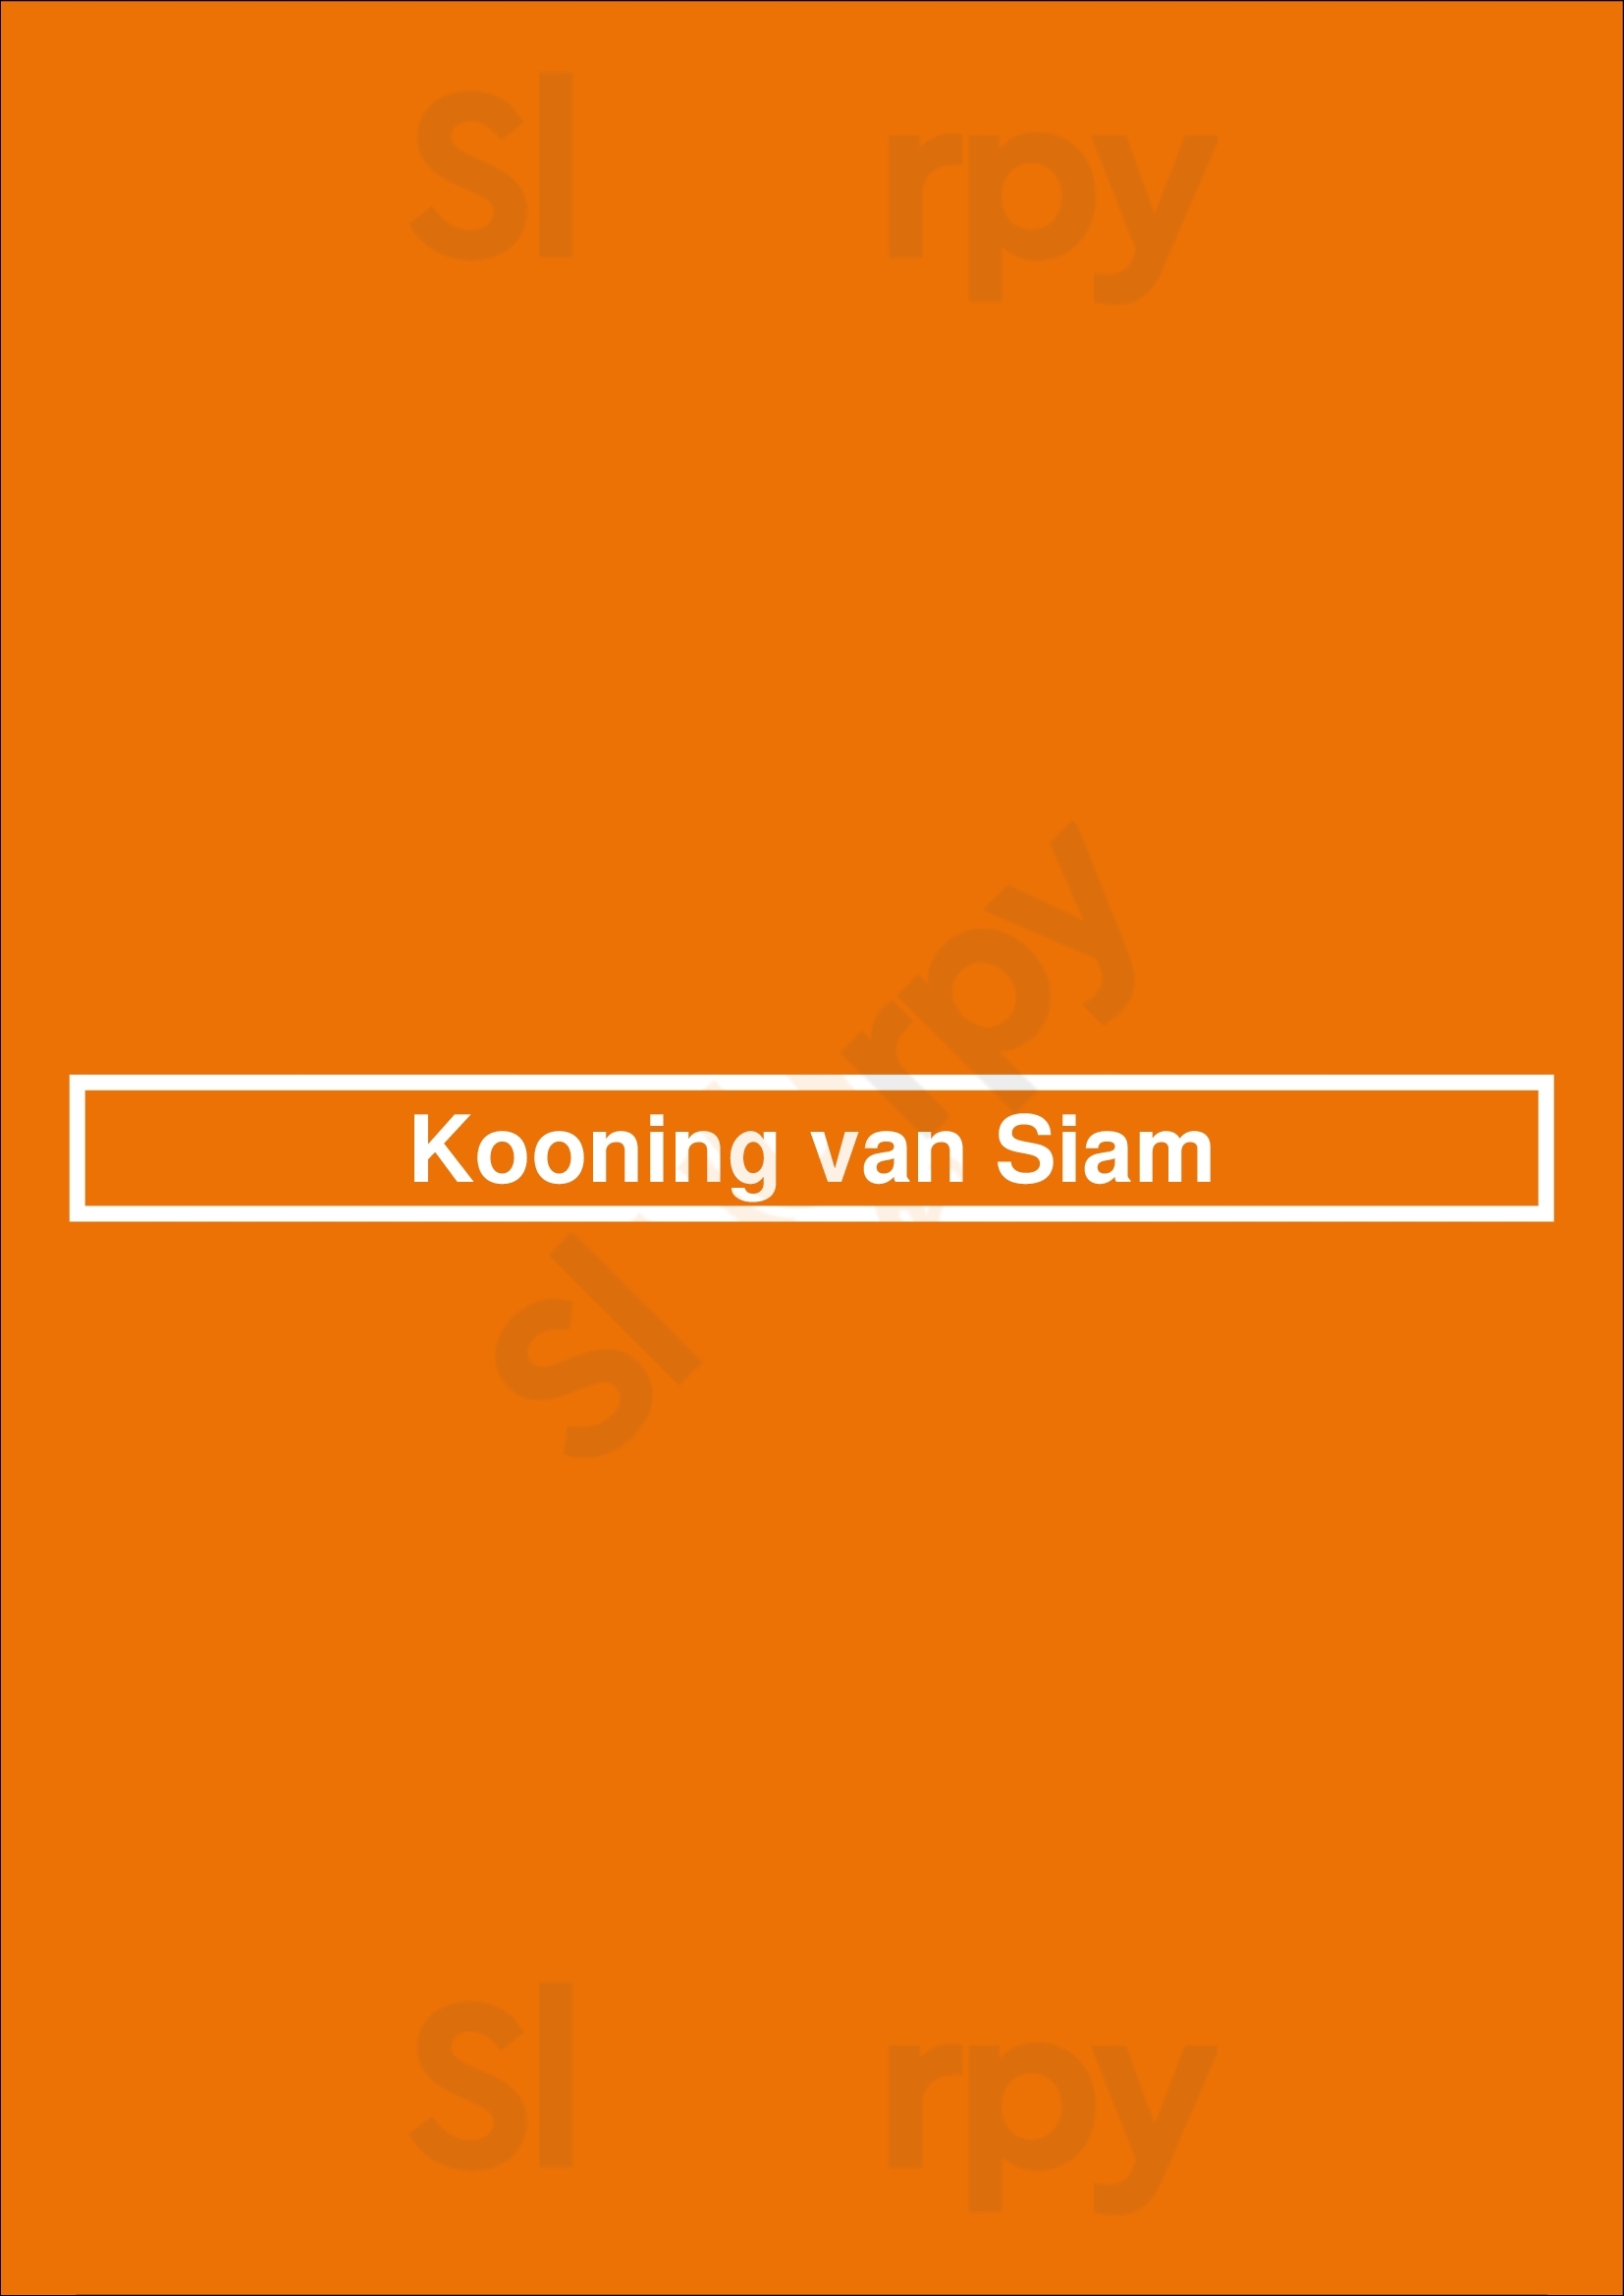 Kooning Van Siam Amsterdam Menu - 1